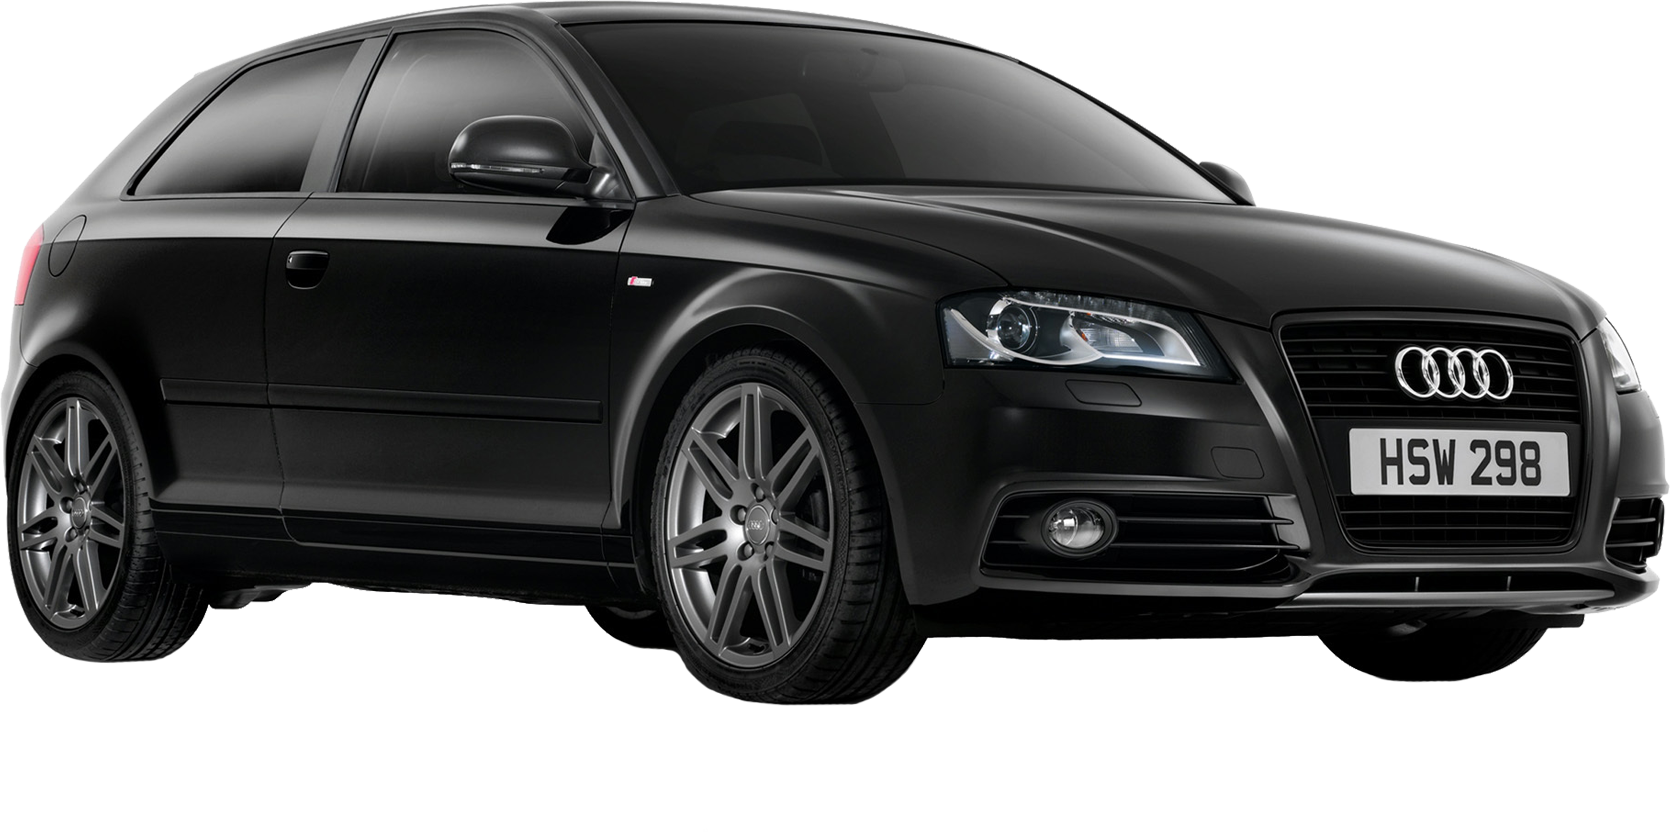 Black AUDI PNG car image